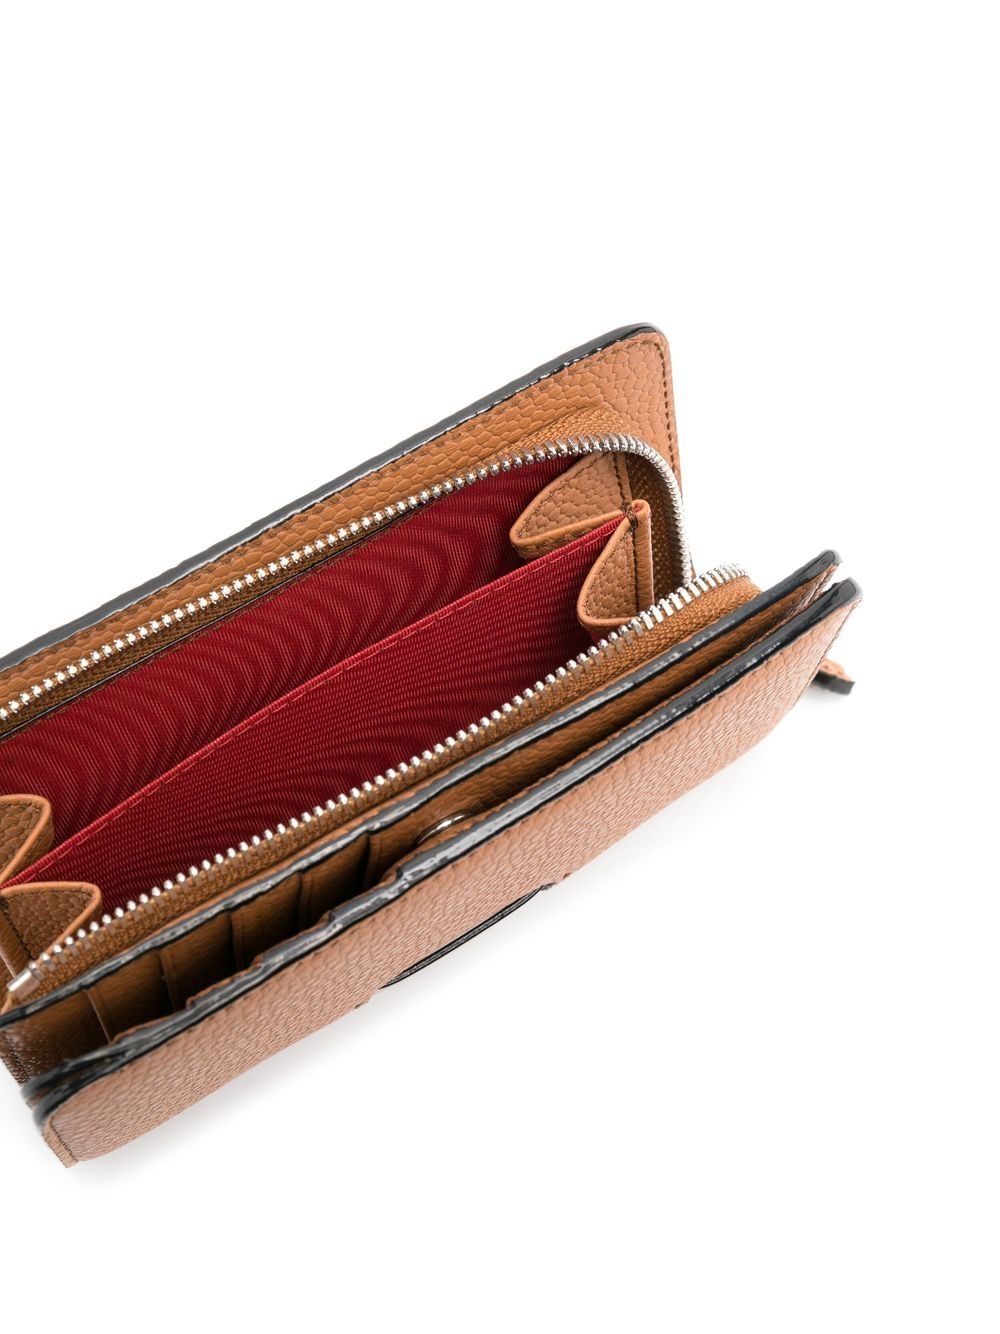 zip compact wallet - 3